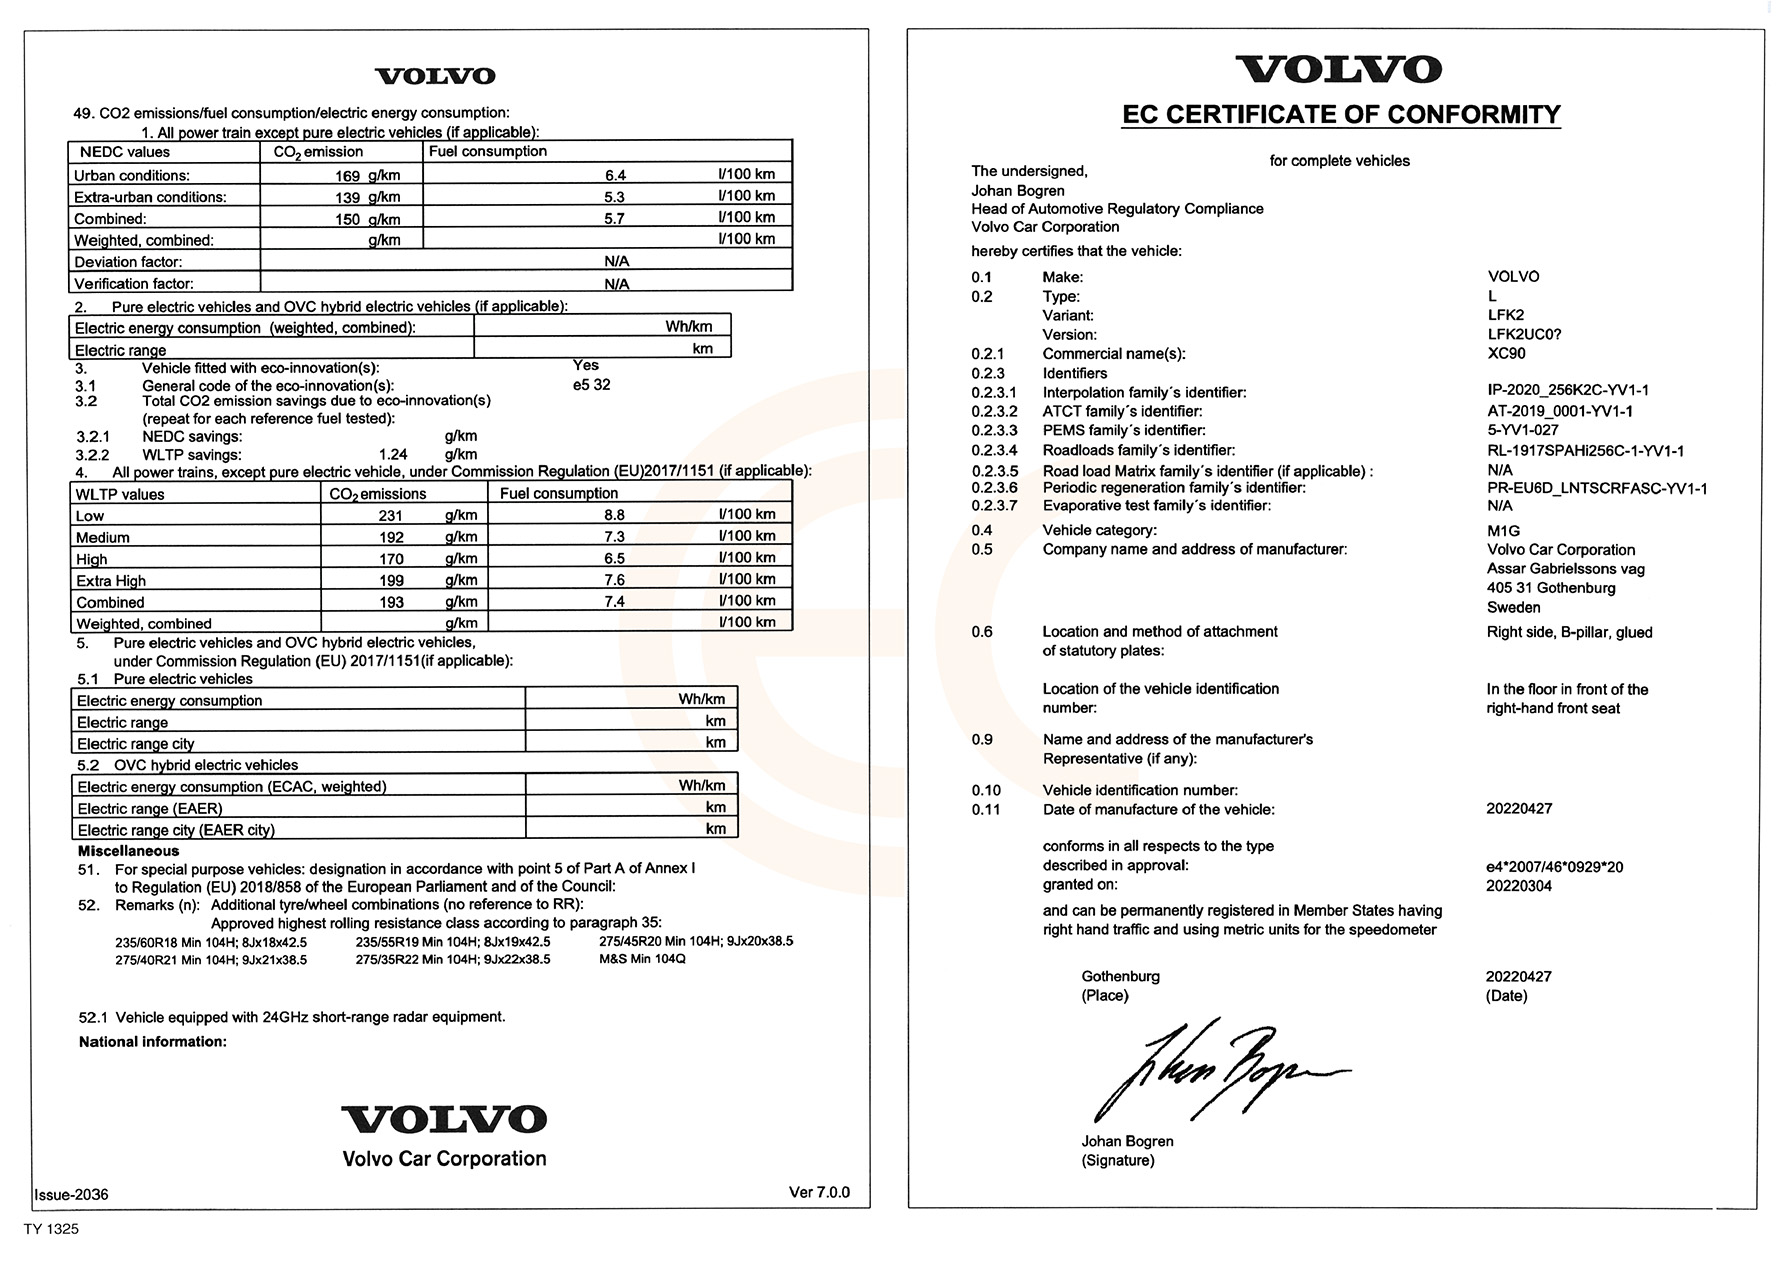 Beispiel einer Volvo-Konformitätsbescheinigung